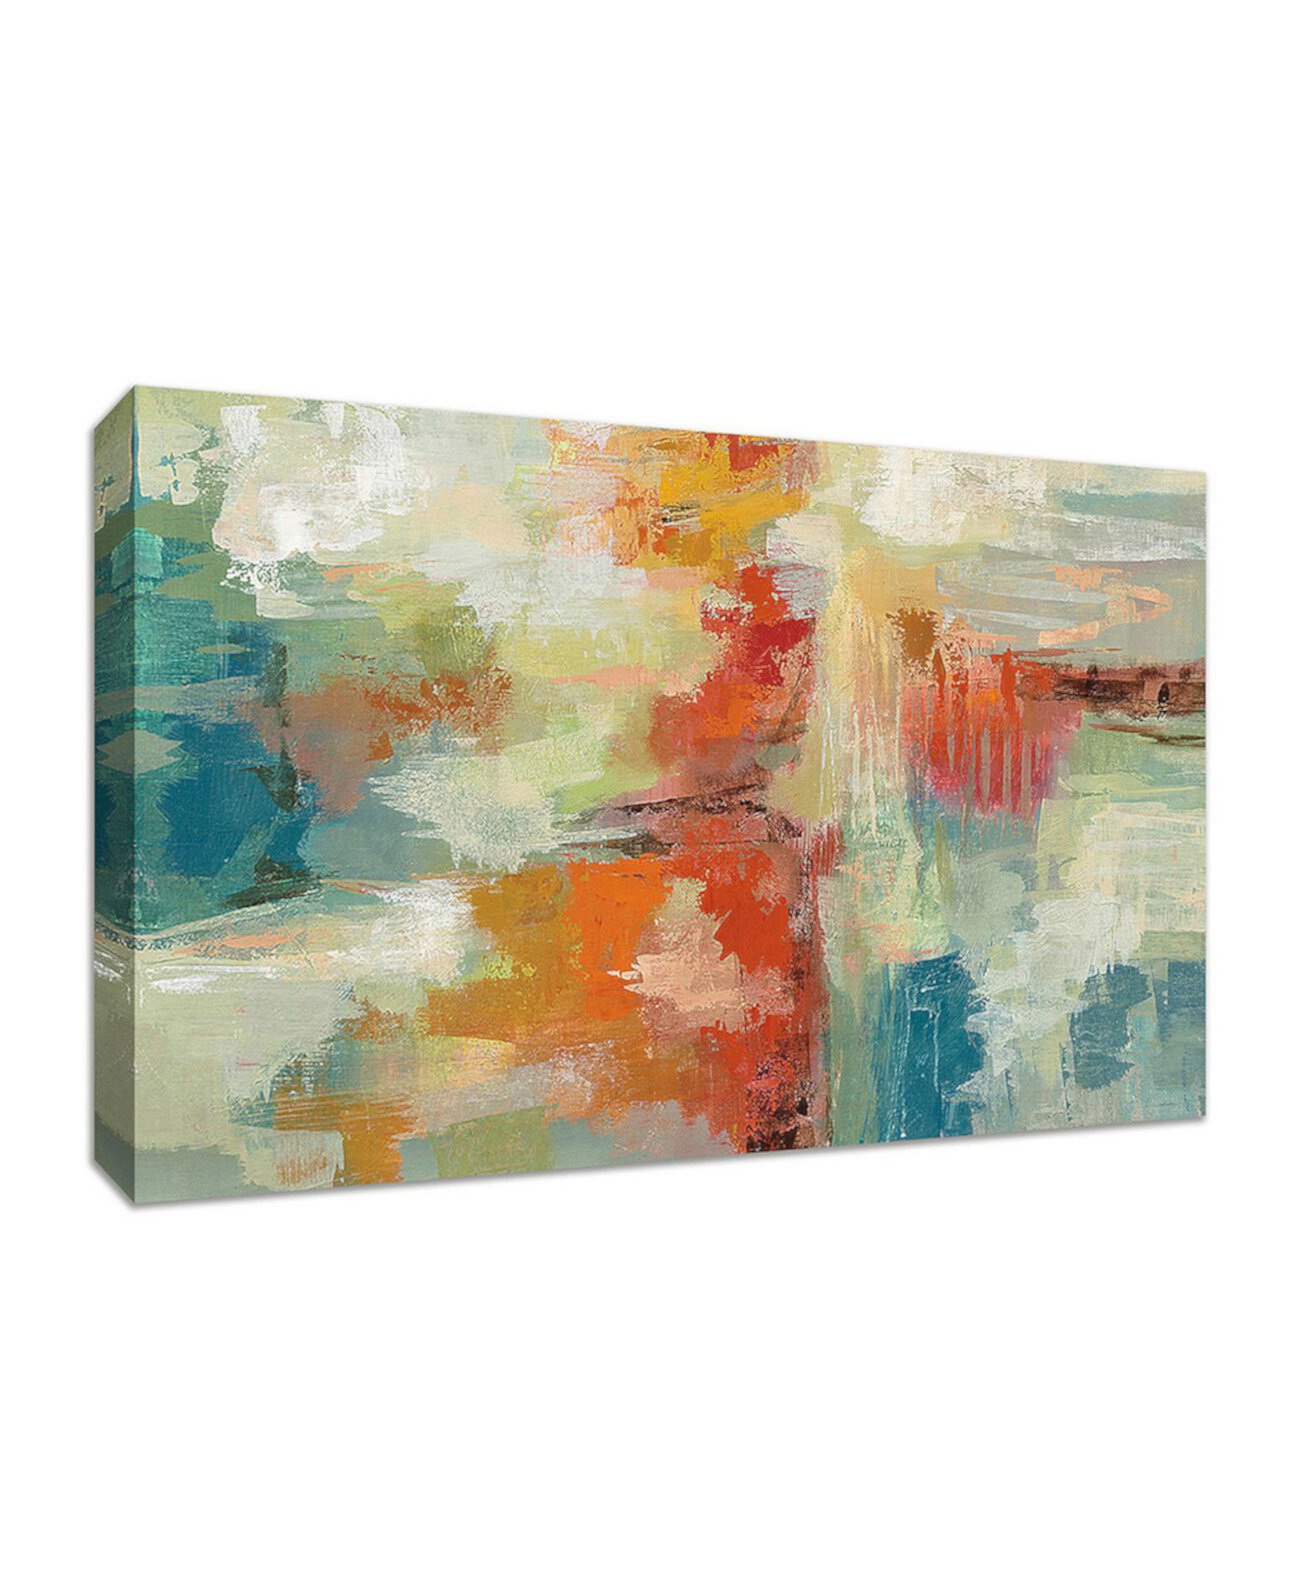 Коралловый риф, автор - Сильвия Васильева, художественная печать жикле на холсте Gallery Wrap, 45 "x 30" Tangletown Fine Art